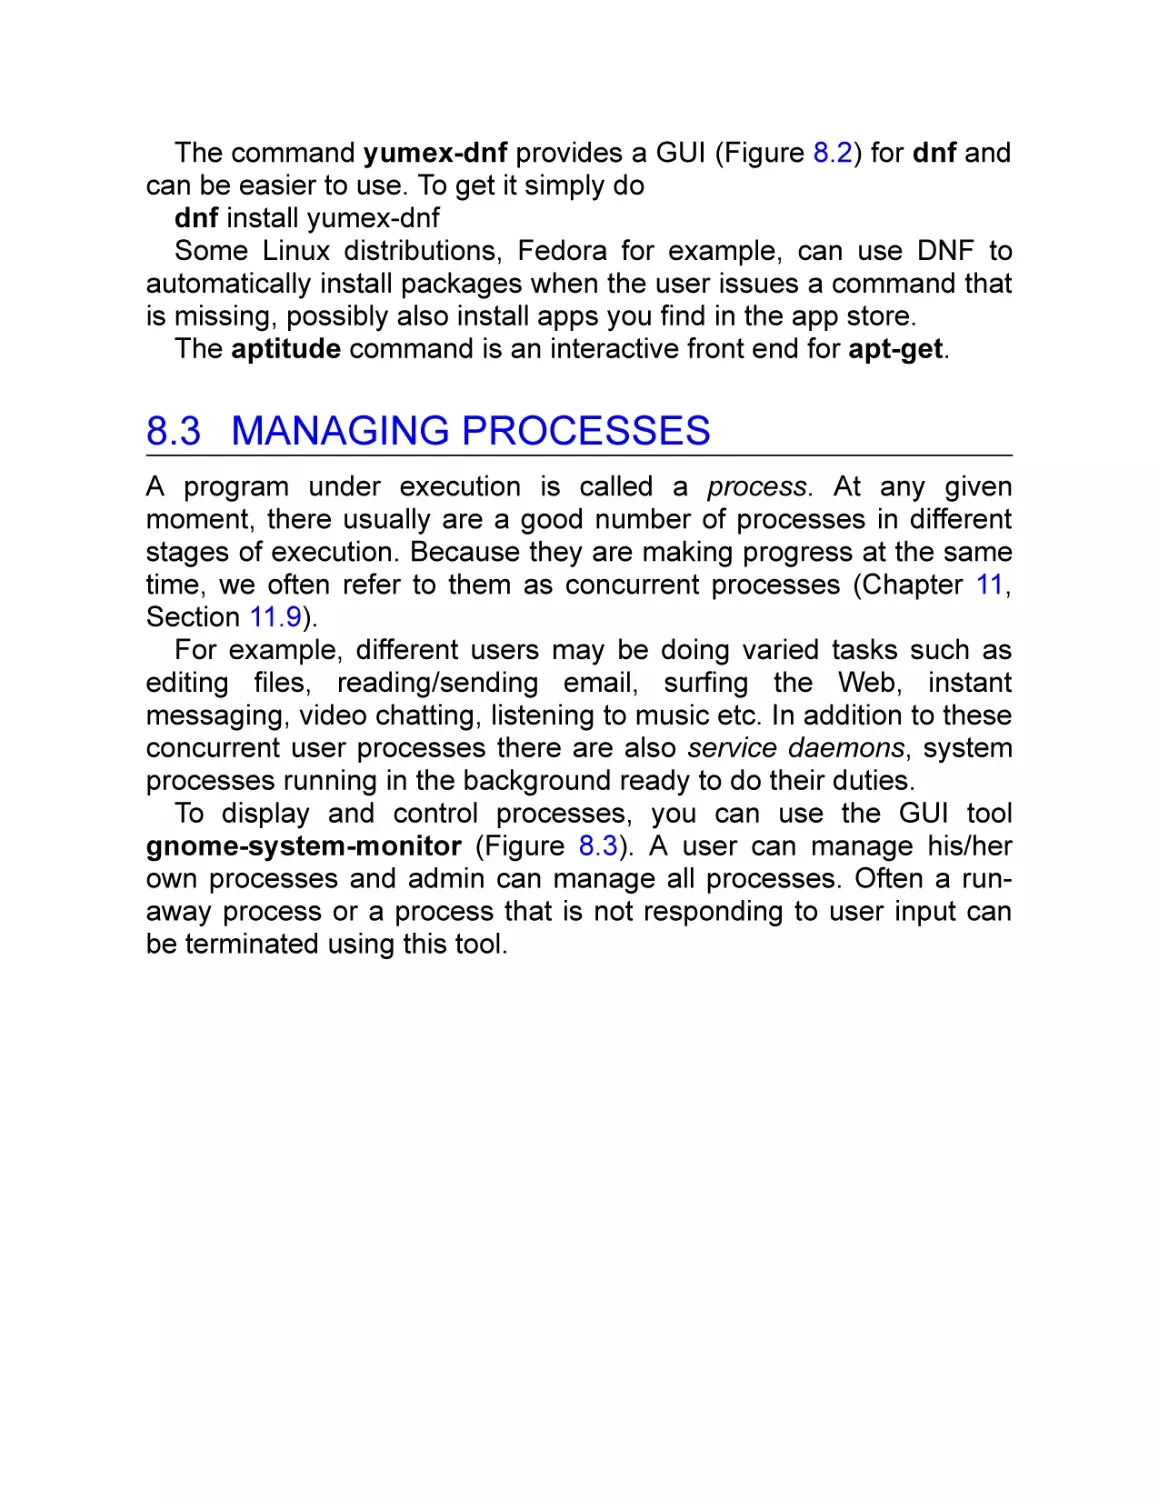 8.3 Managing Processes